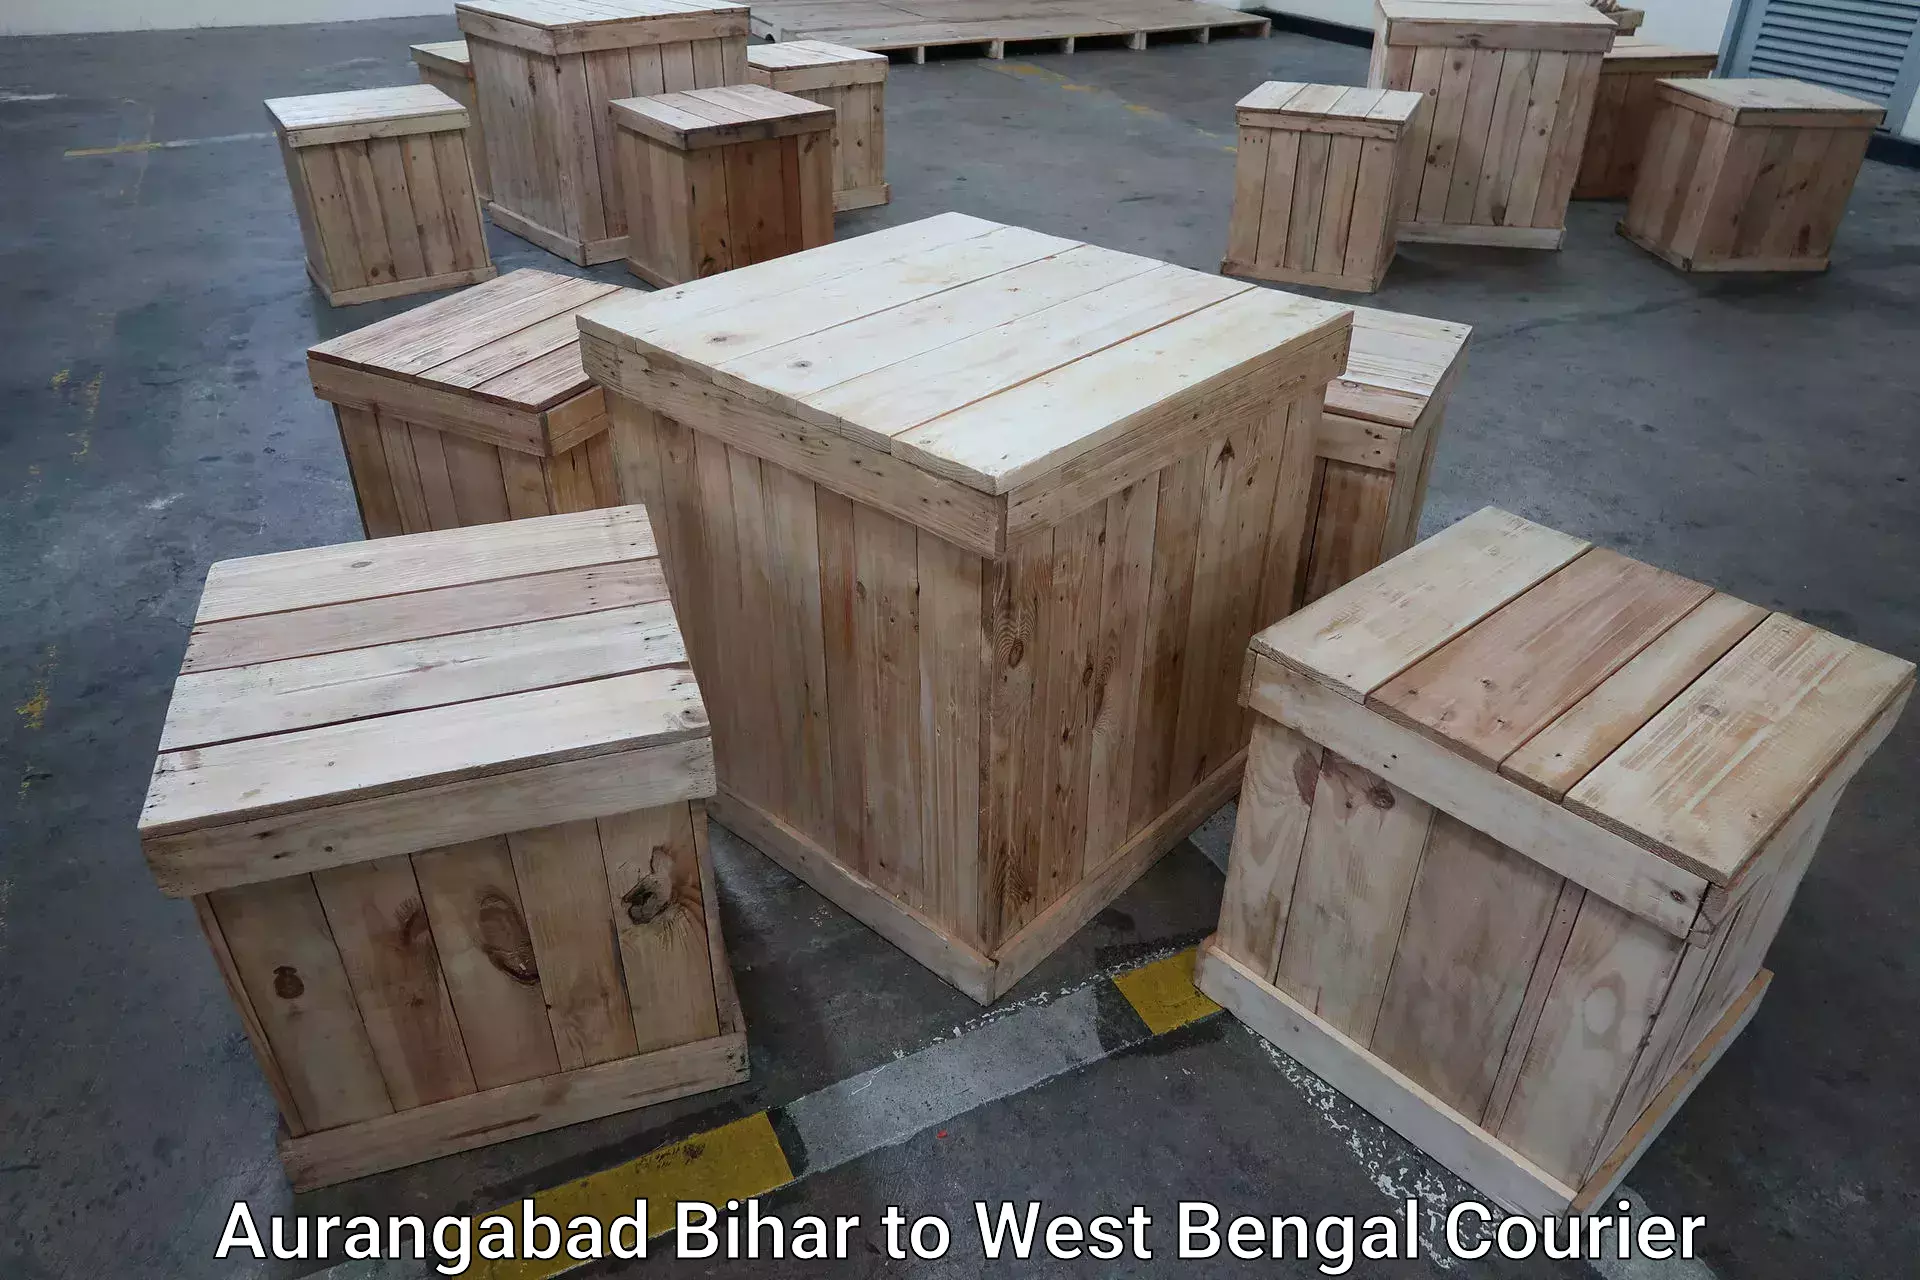 Luggage shipping planner Aurangabad Bihar to Kanchrapara